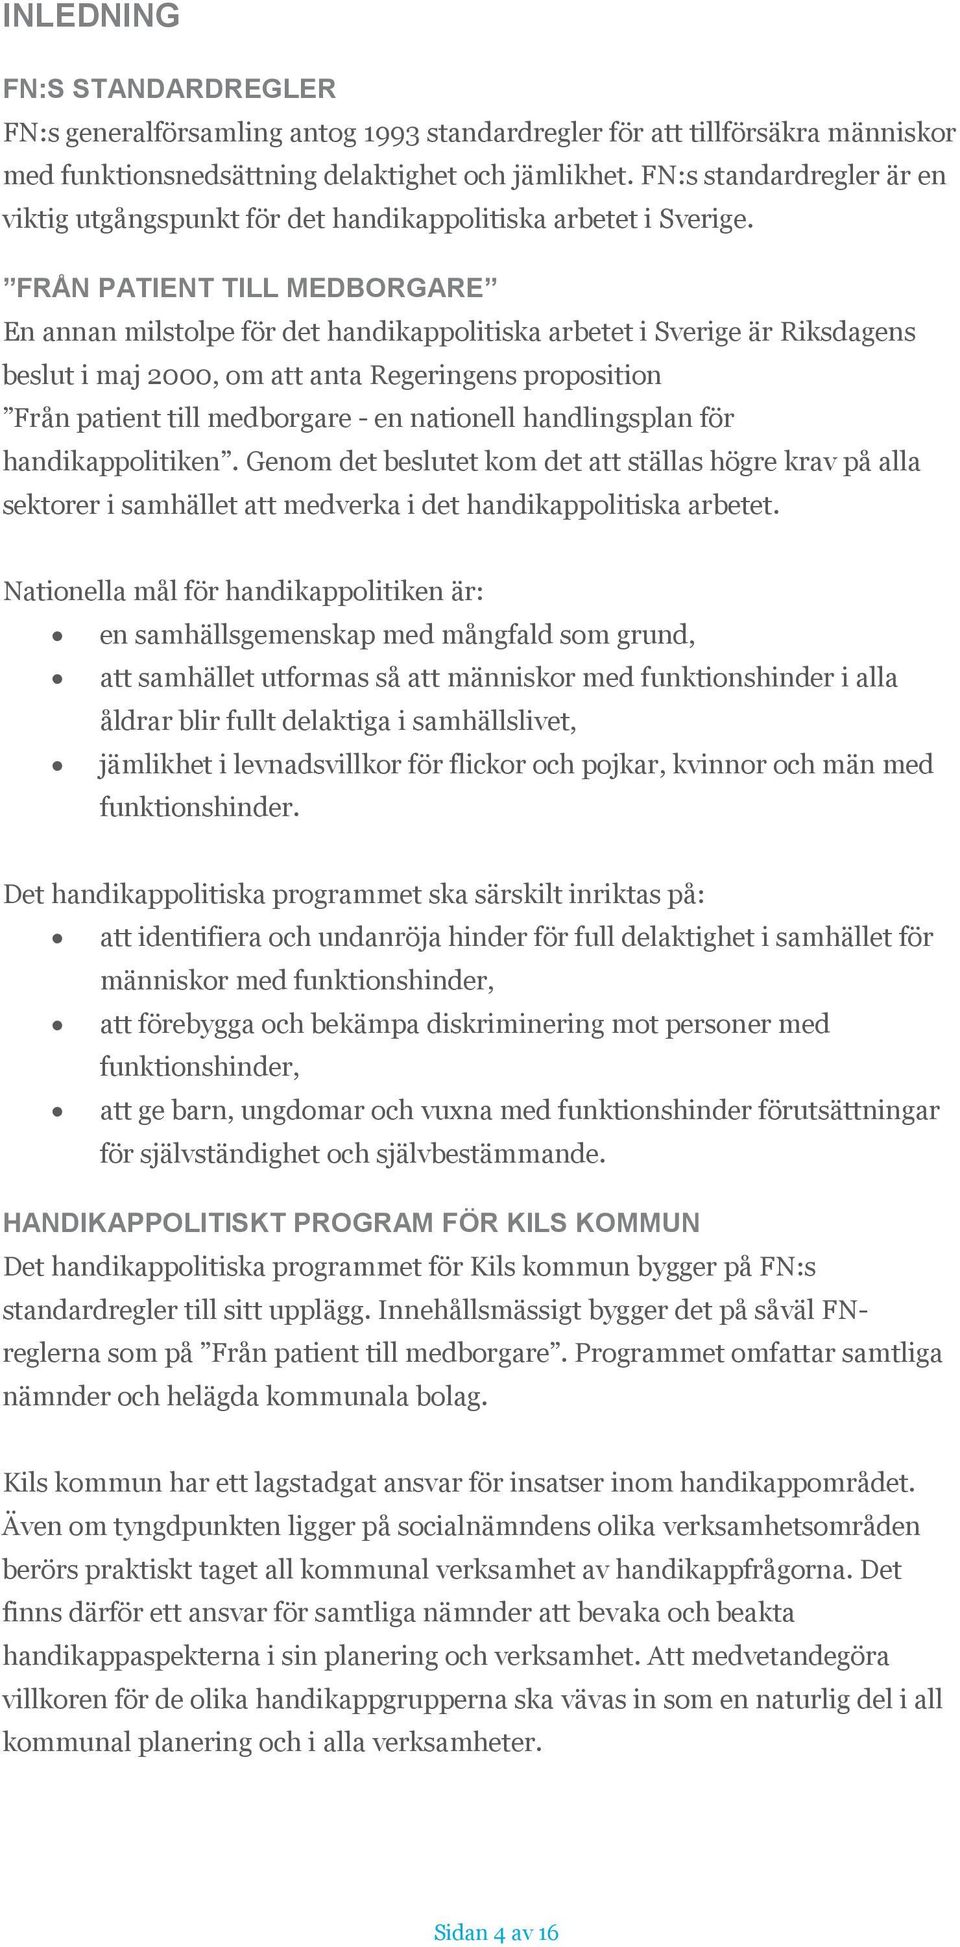 FRÅN PATIENT TILL MEDBORGARE En annan milstolpe för det handikappolitiska arbetet i Sverige är Riksdagens beslut i maj 2000, om att anta Regeringens proposition Från patient till medborgare - en